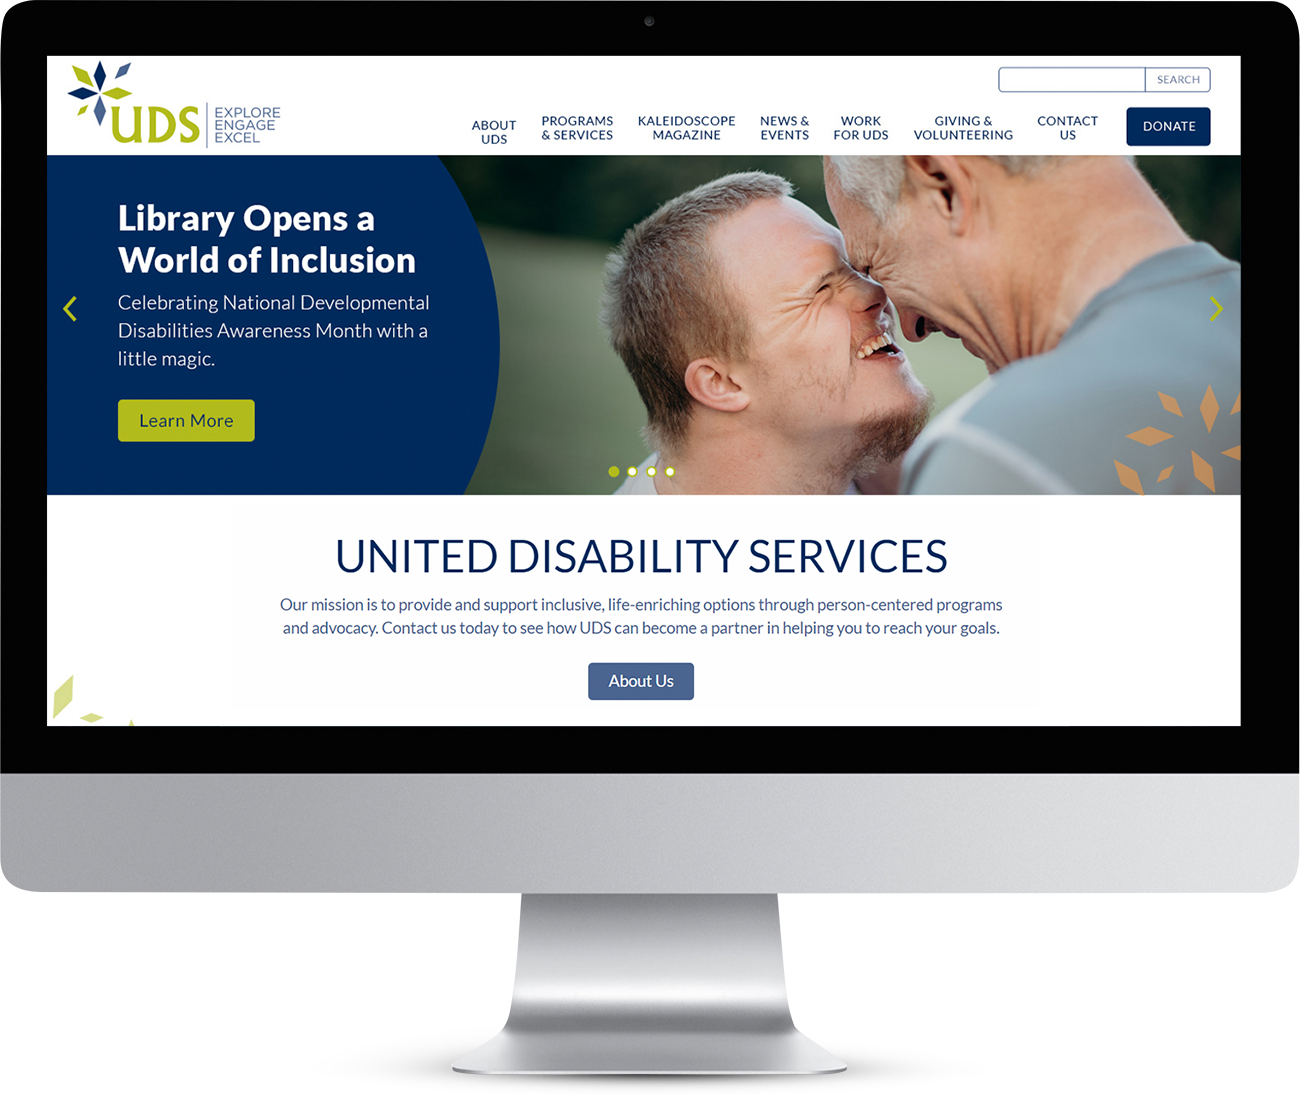 联合残疾服务主页显示